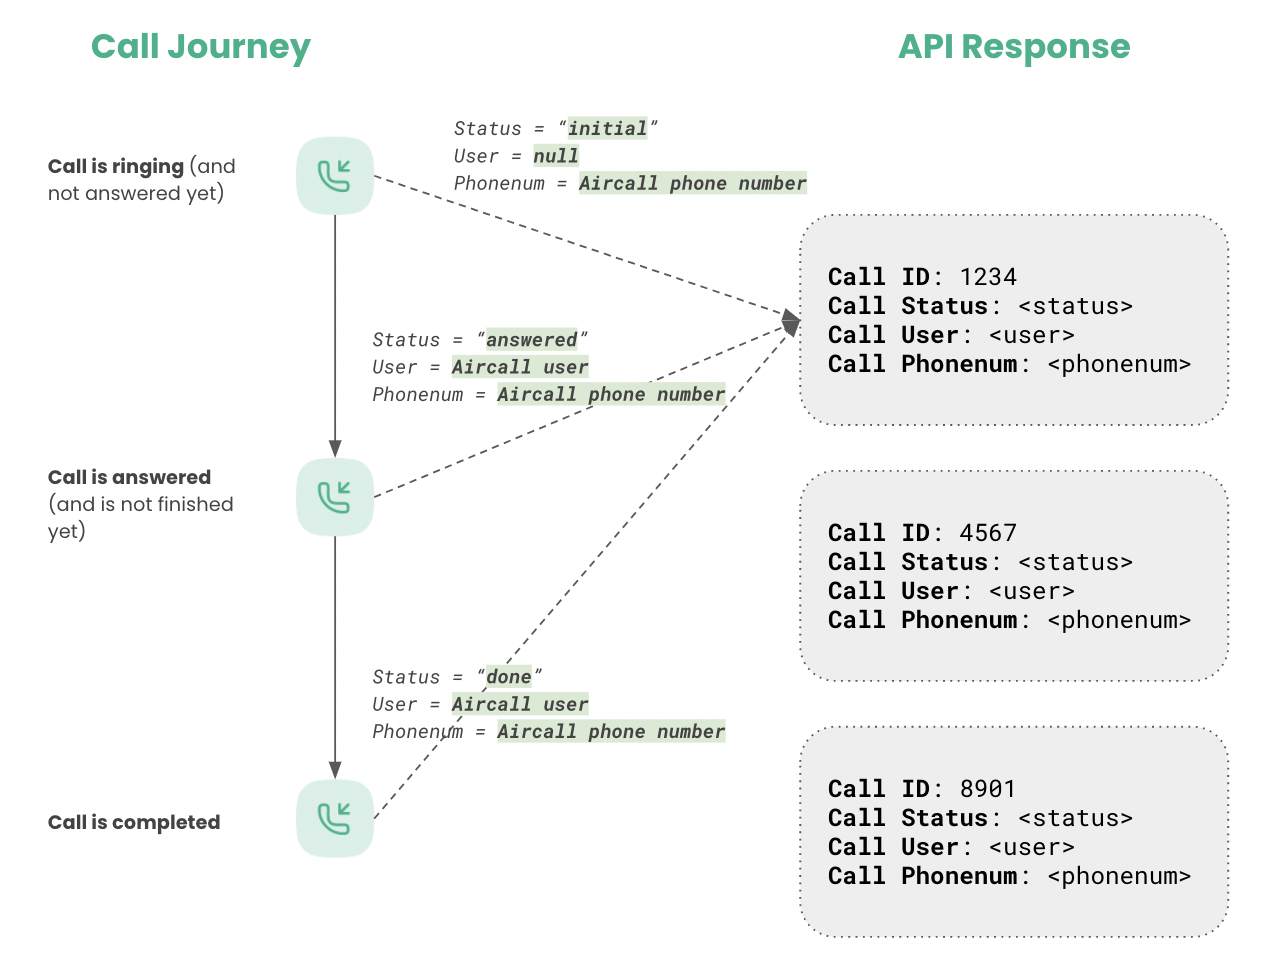 API Response Through Call Journey